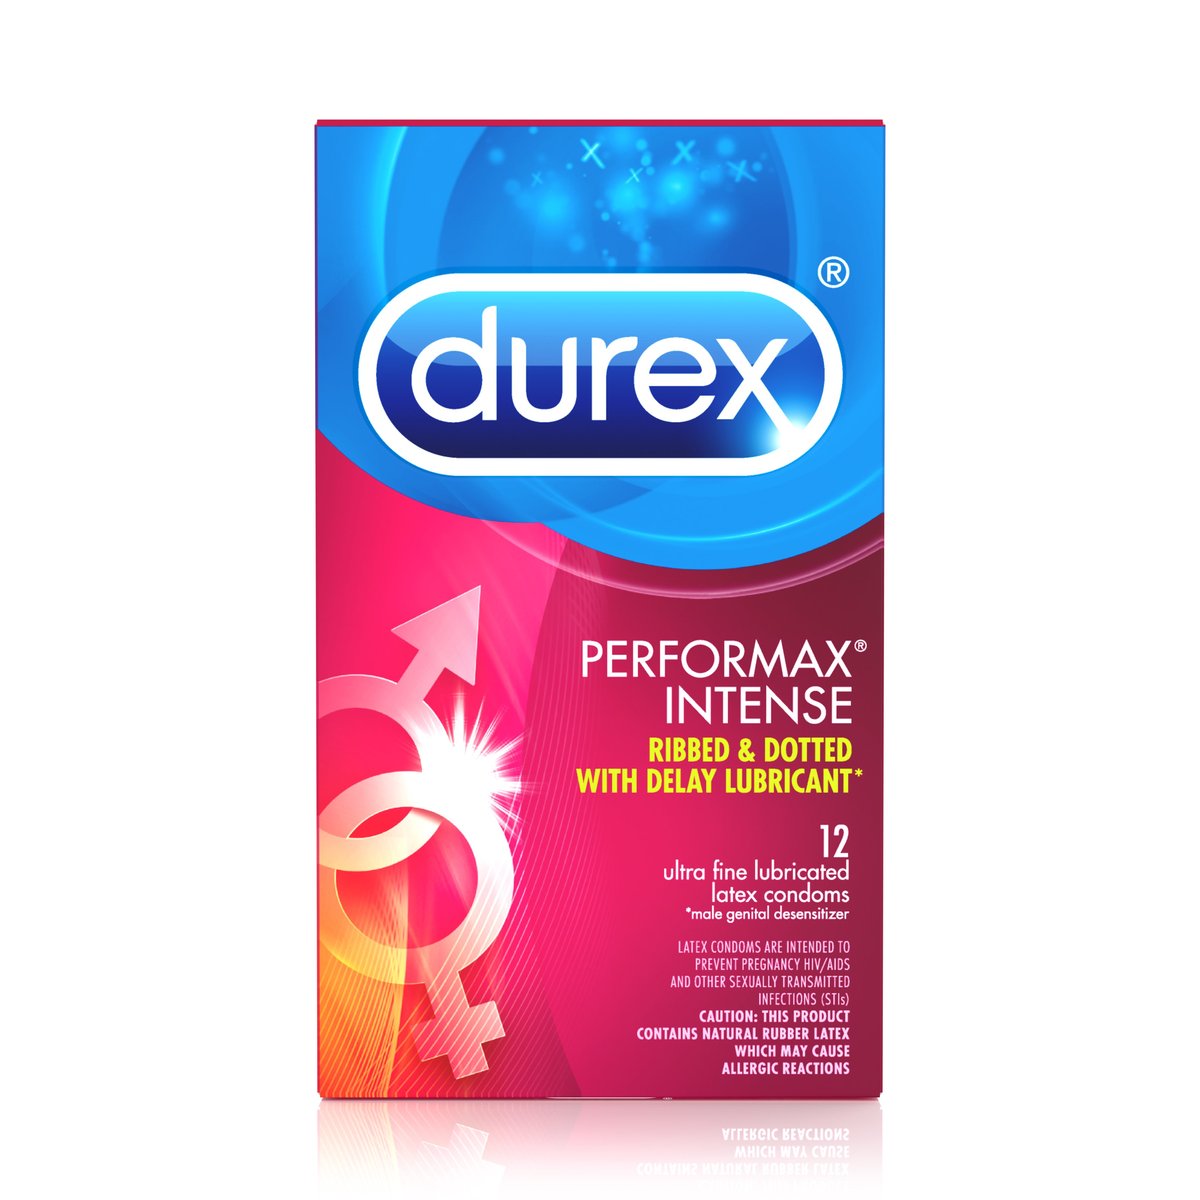 6. Durex Performax Intense 